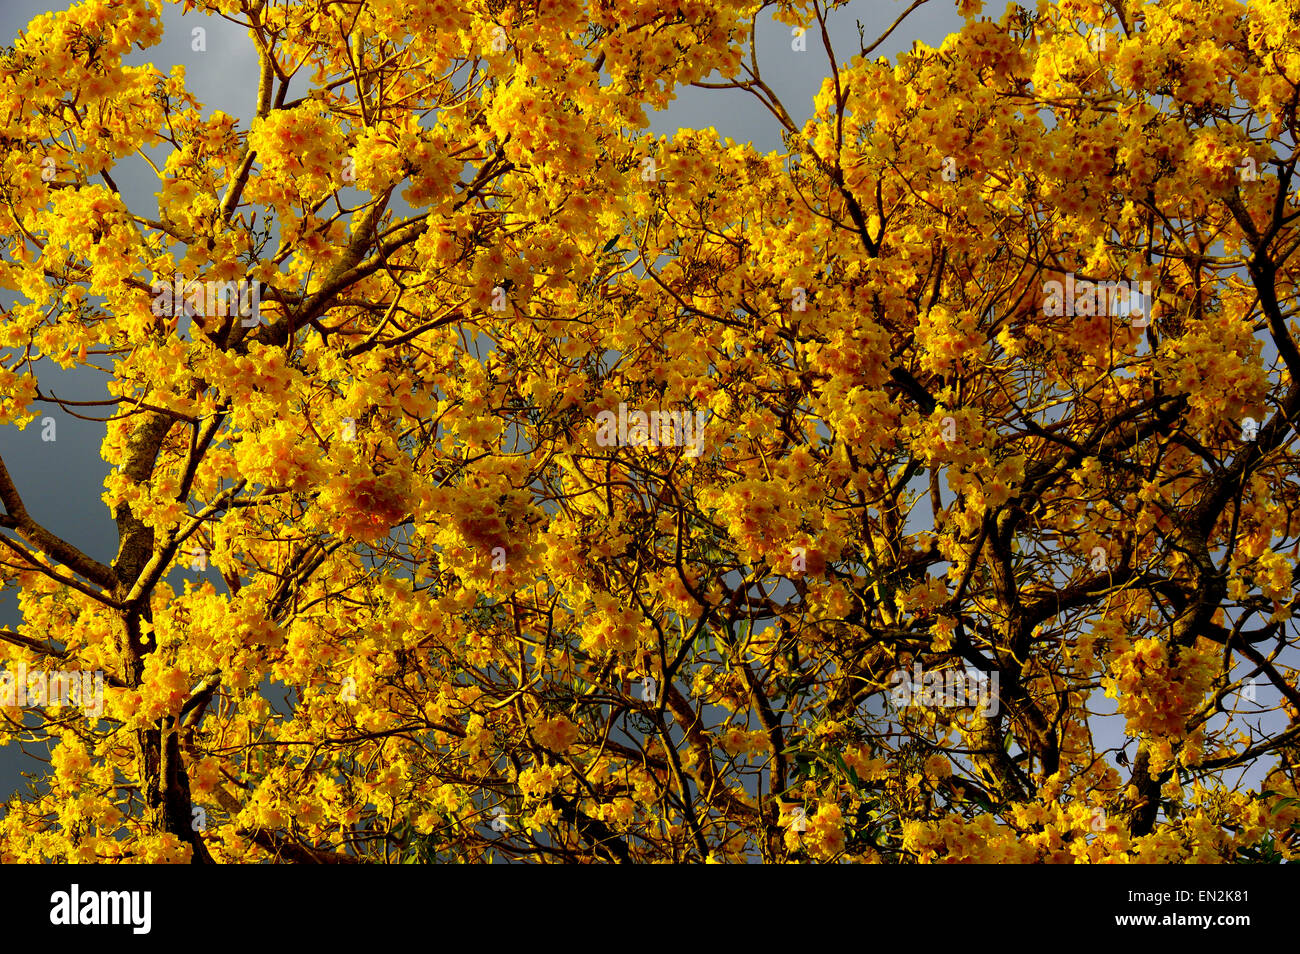 Detail of yellow Tularia Tree Stock Photo